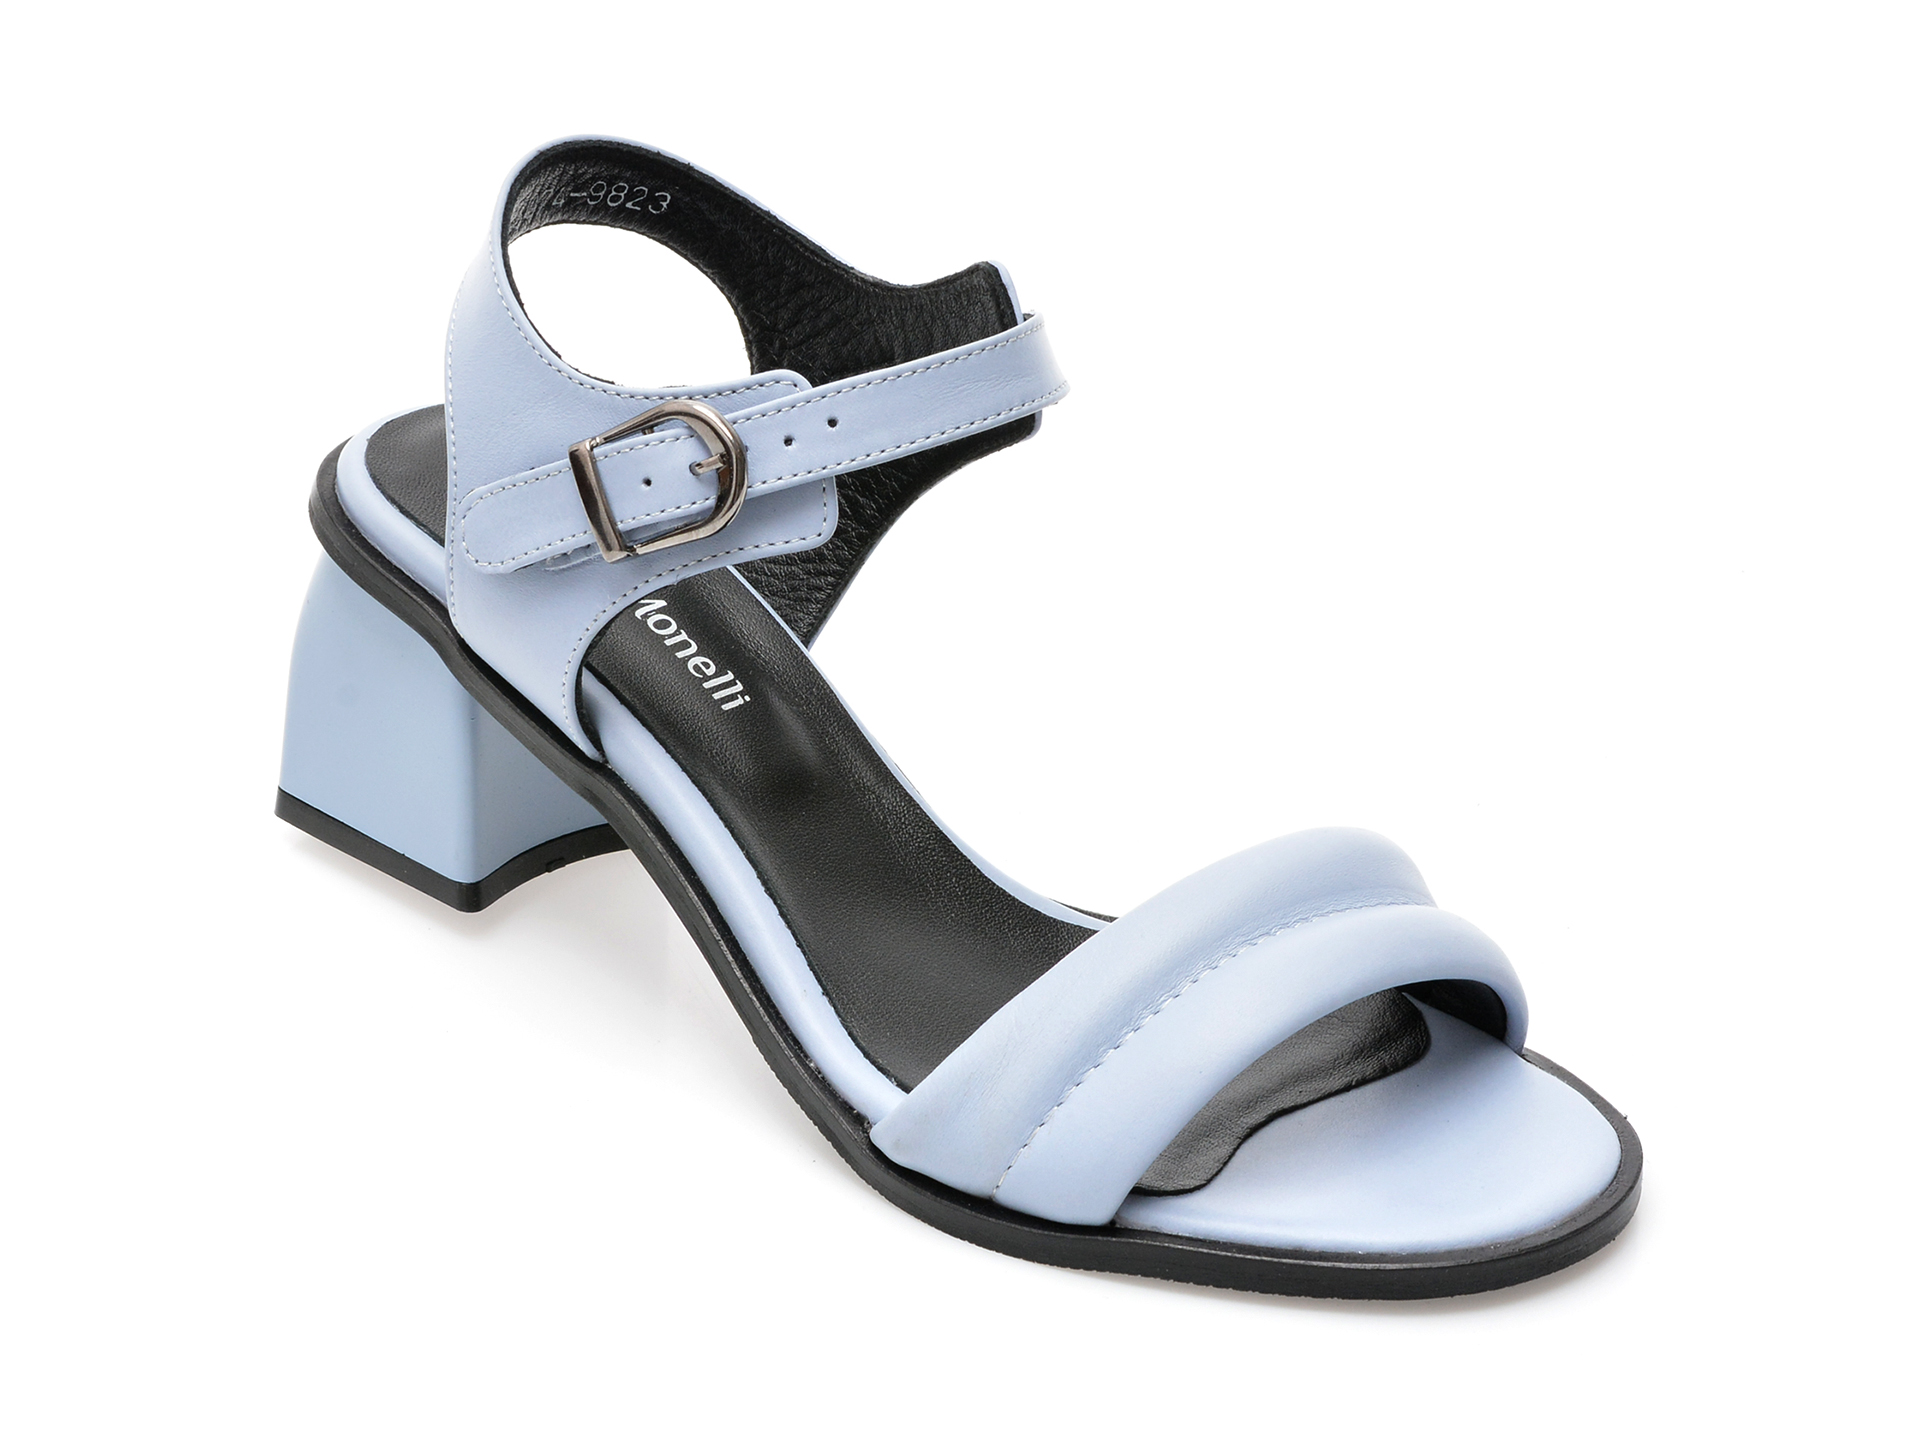 Sandale FABIO MONELLI albastre, 717, din piele naturala /femei/sandale